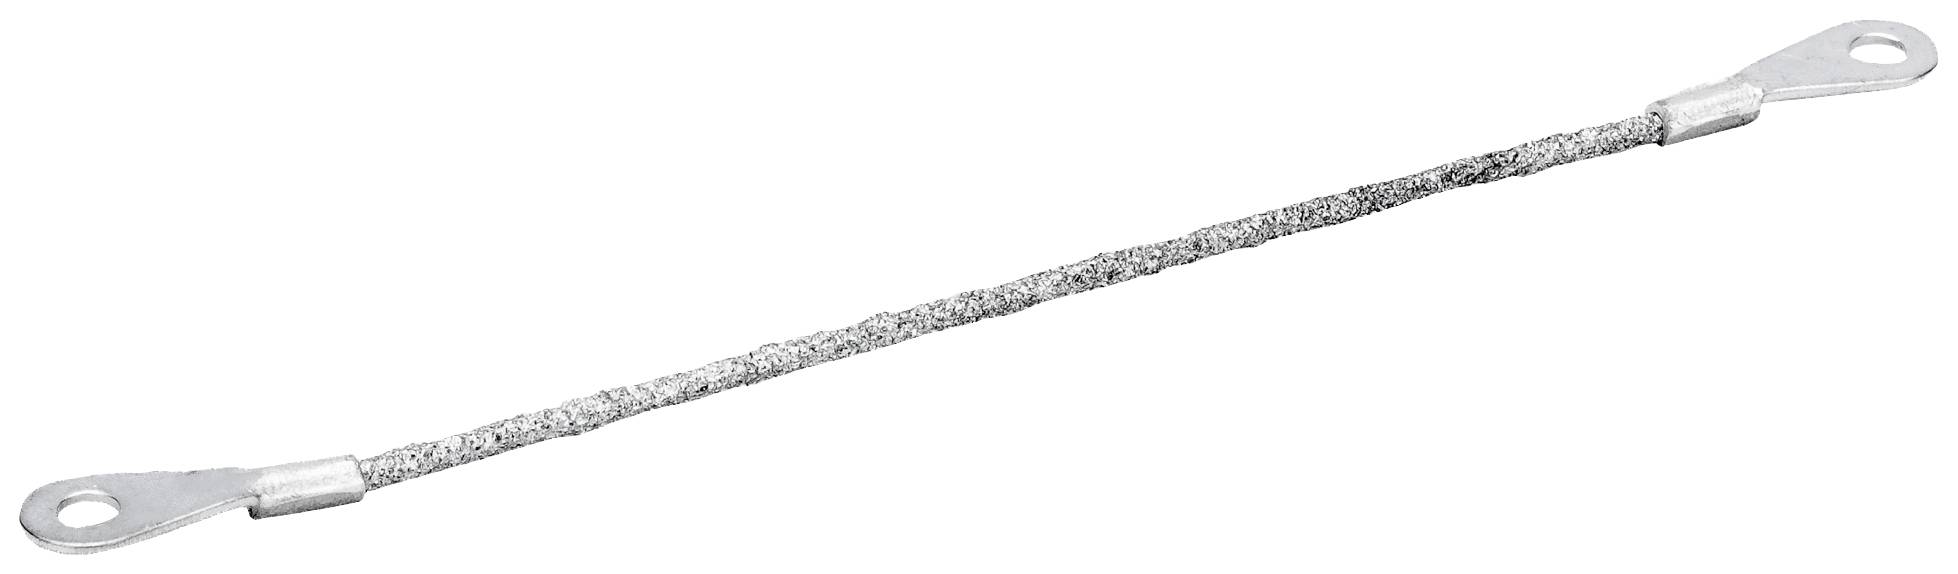 BAHCO 216-150-R Hartmetall-Sägekordel, 150 mm Sägeblatt-Länge 150 mm 1 Stück (216-150-R)